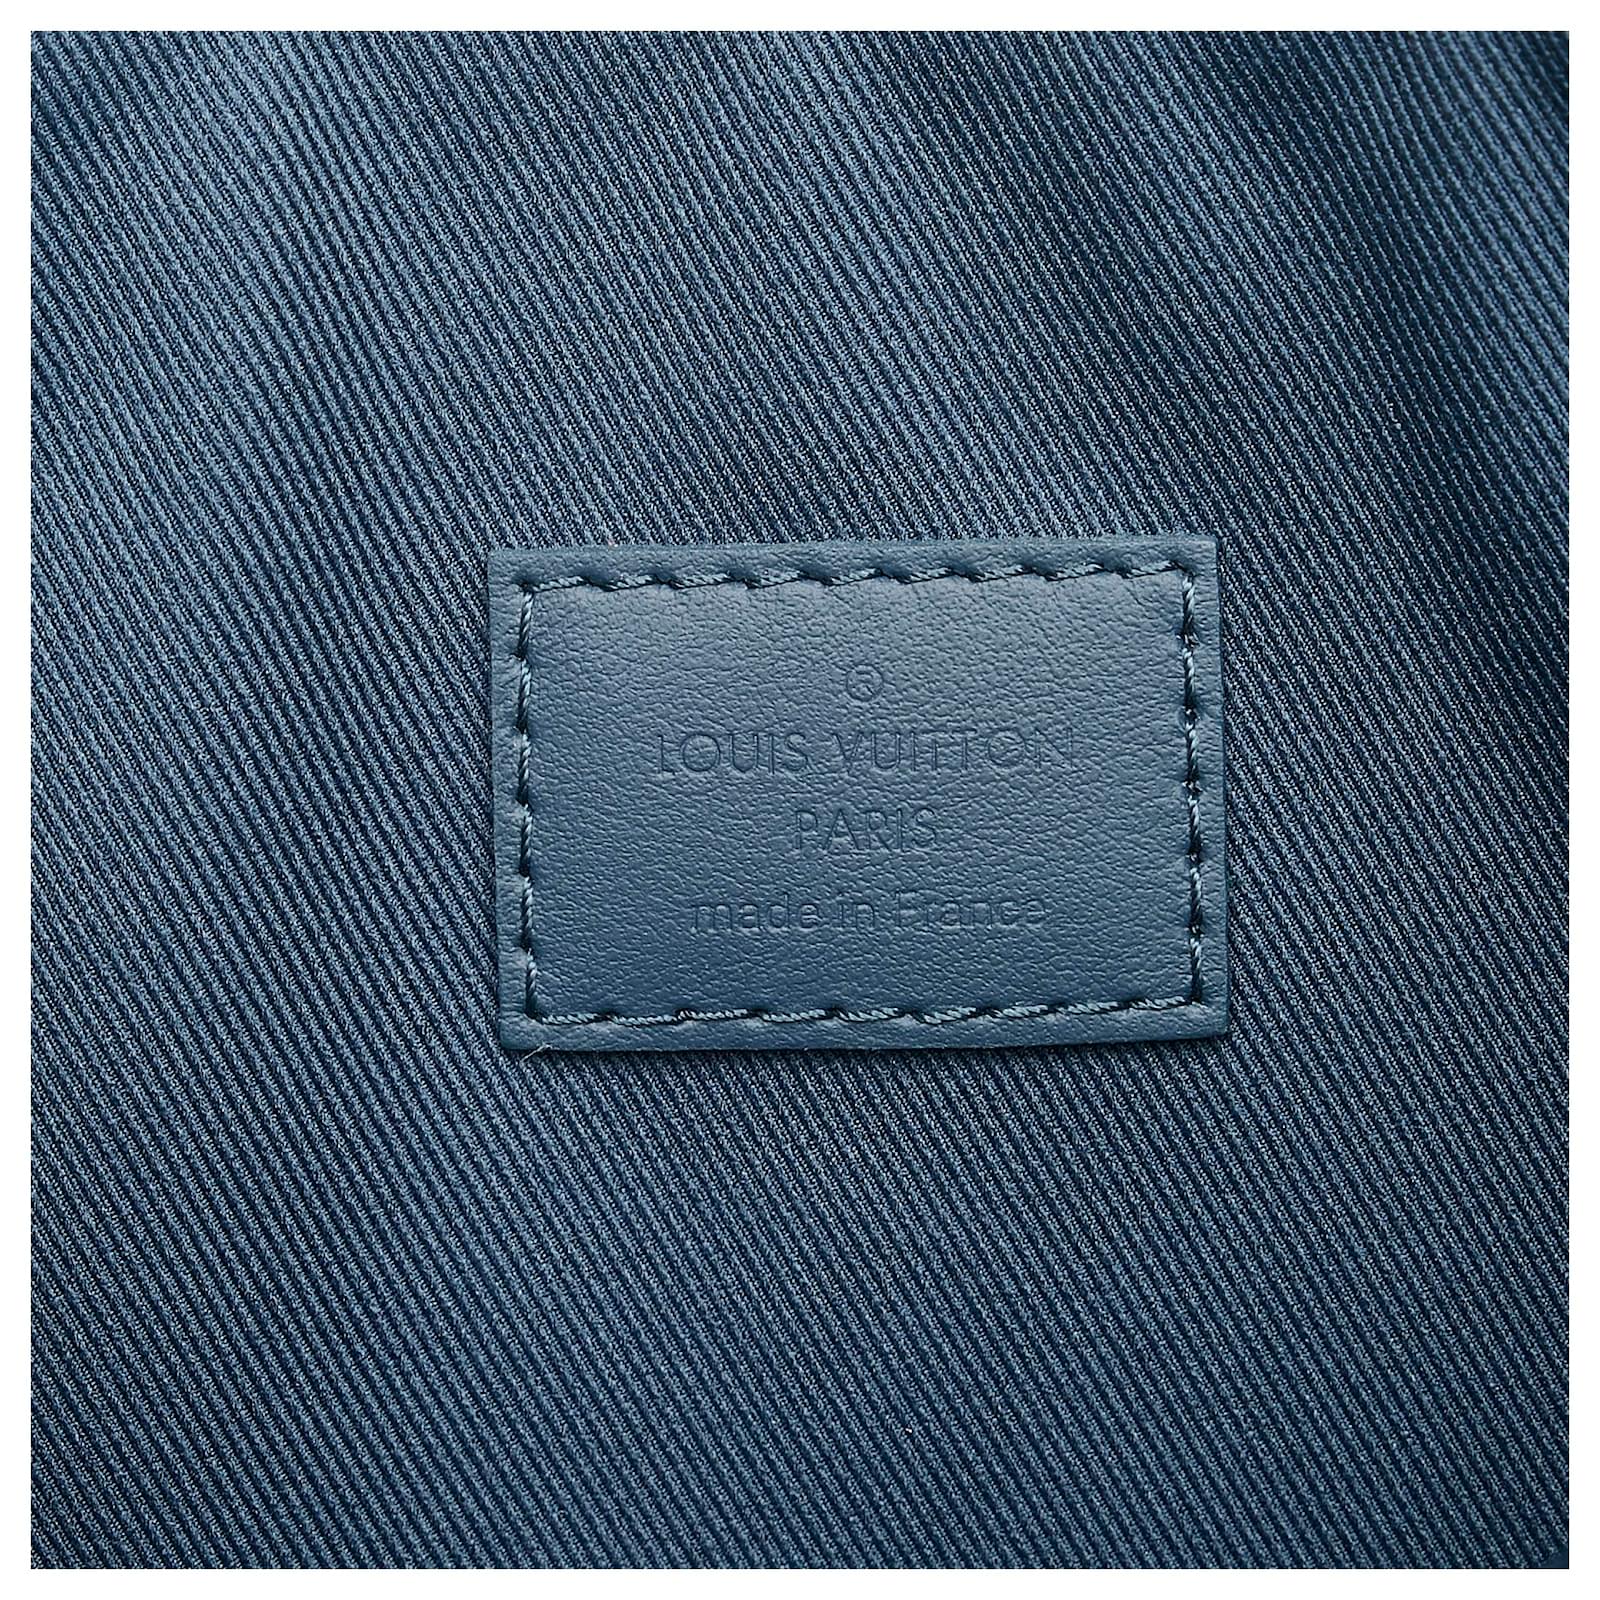 Louis Vuitton Takeoff Pouch In Bleu